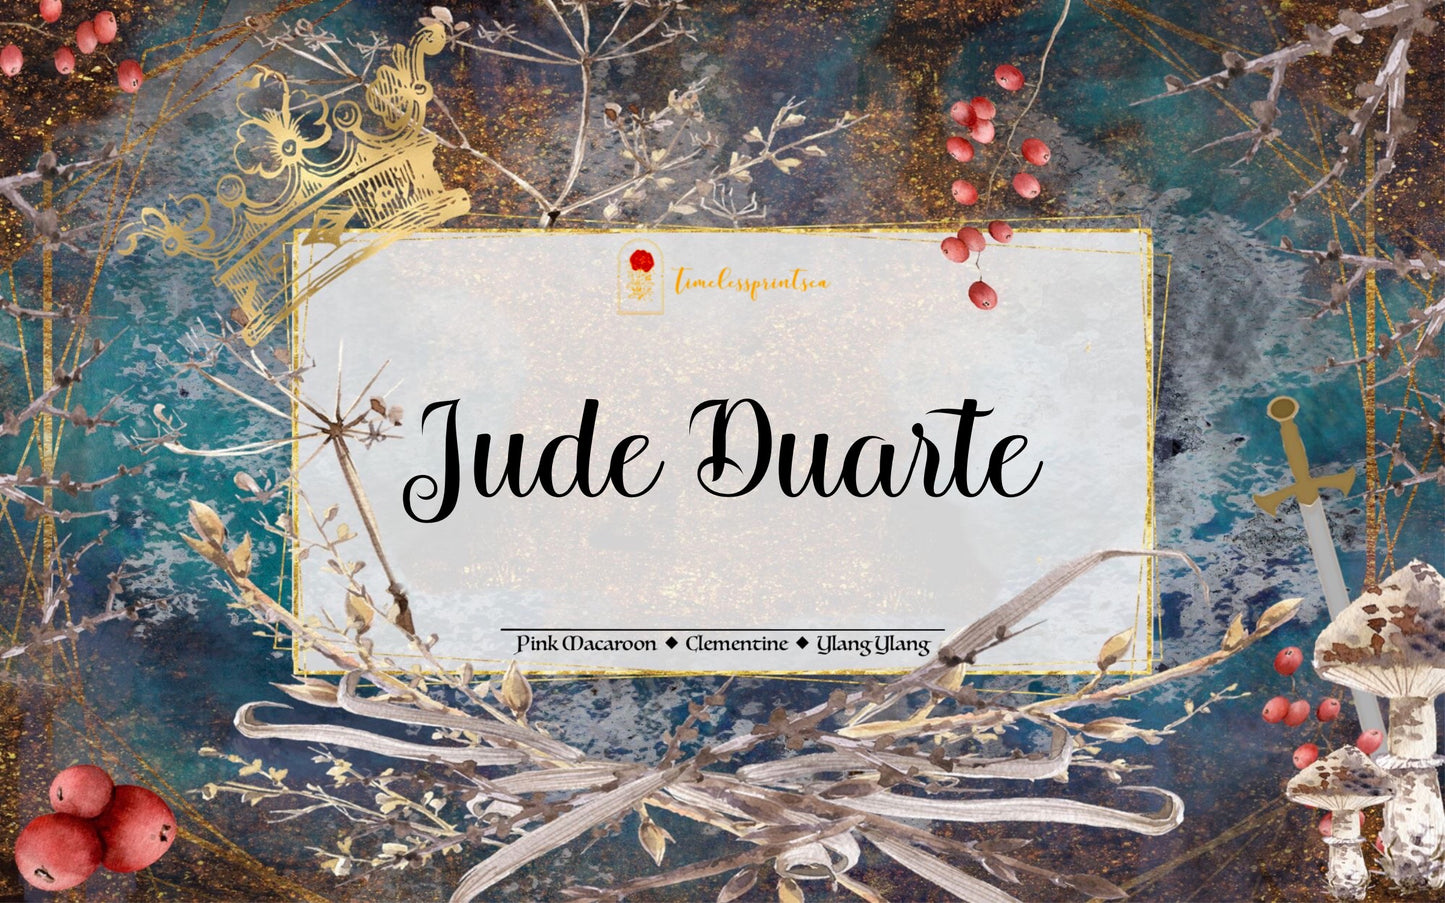 Jude Duarte